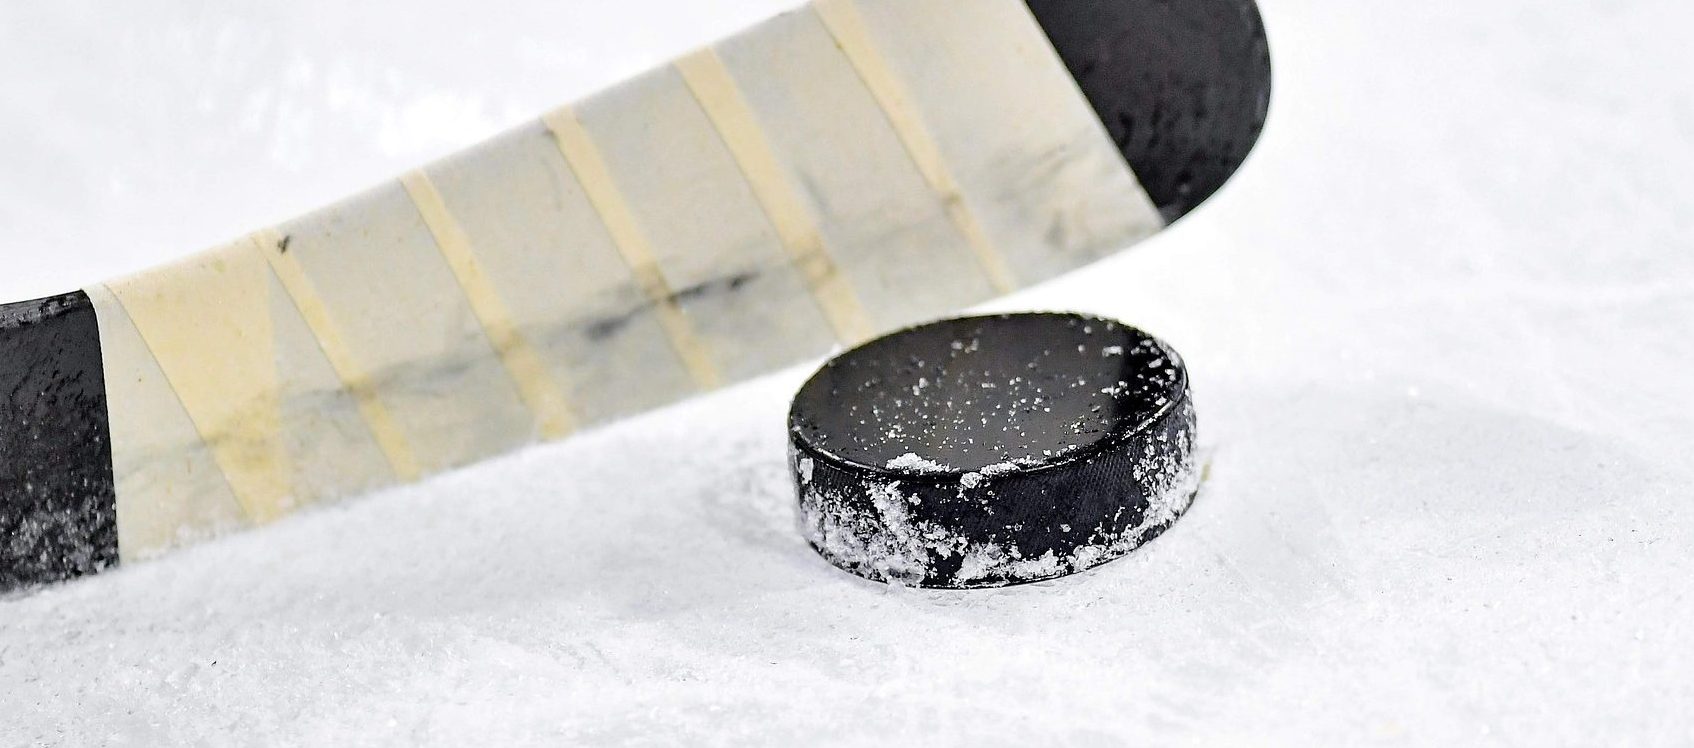 Хоккейная сборная Плехановского университета выиграла матч. Фото: pixabay.com